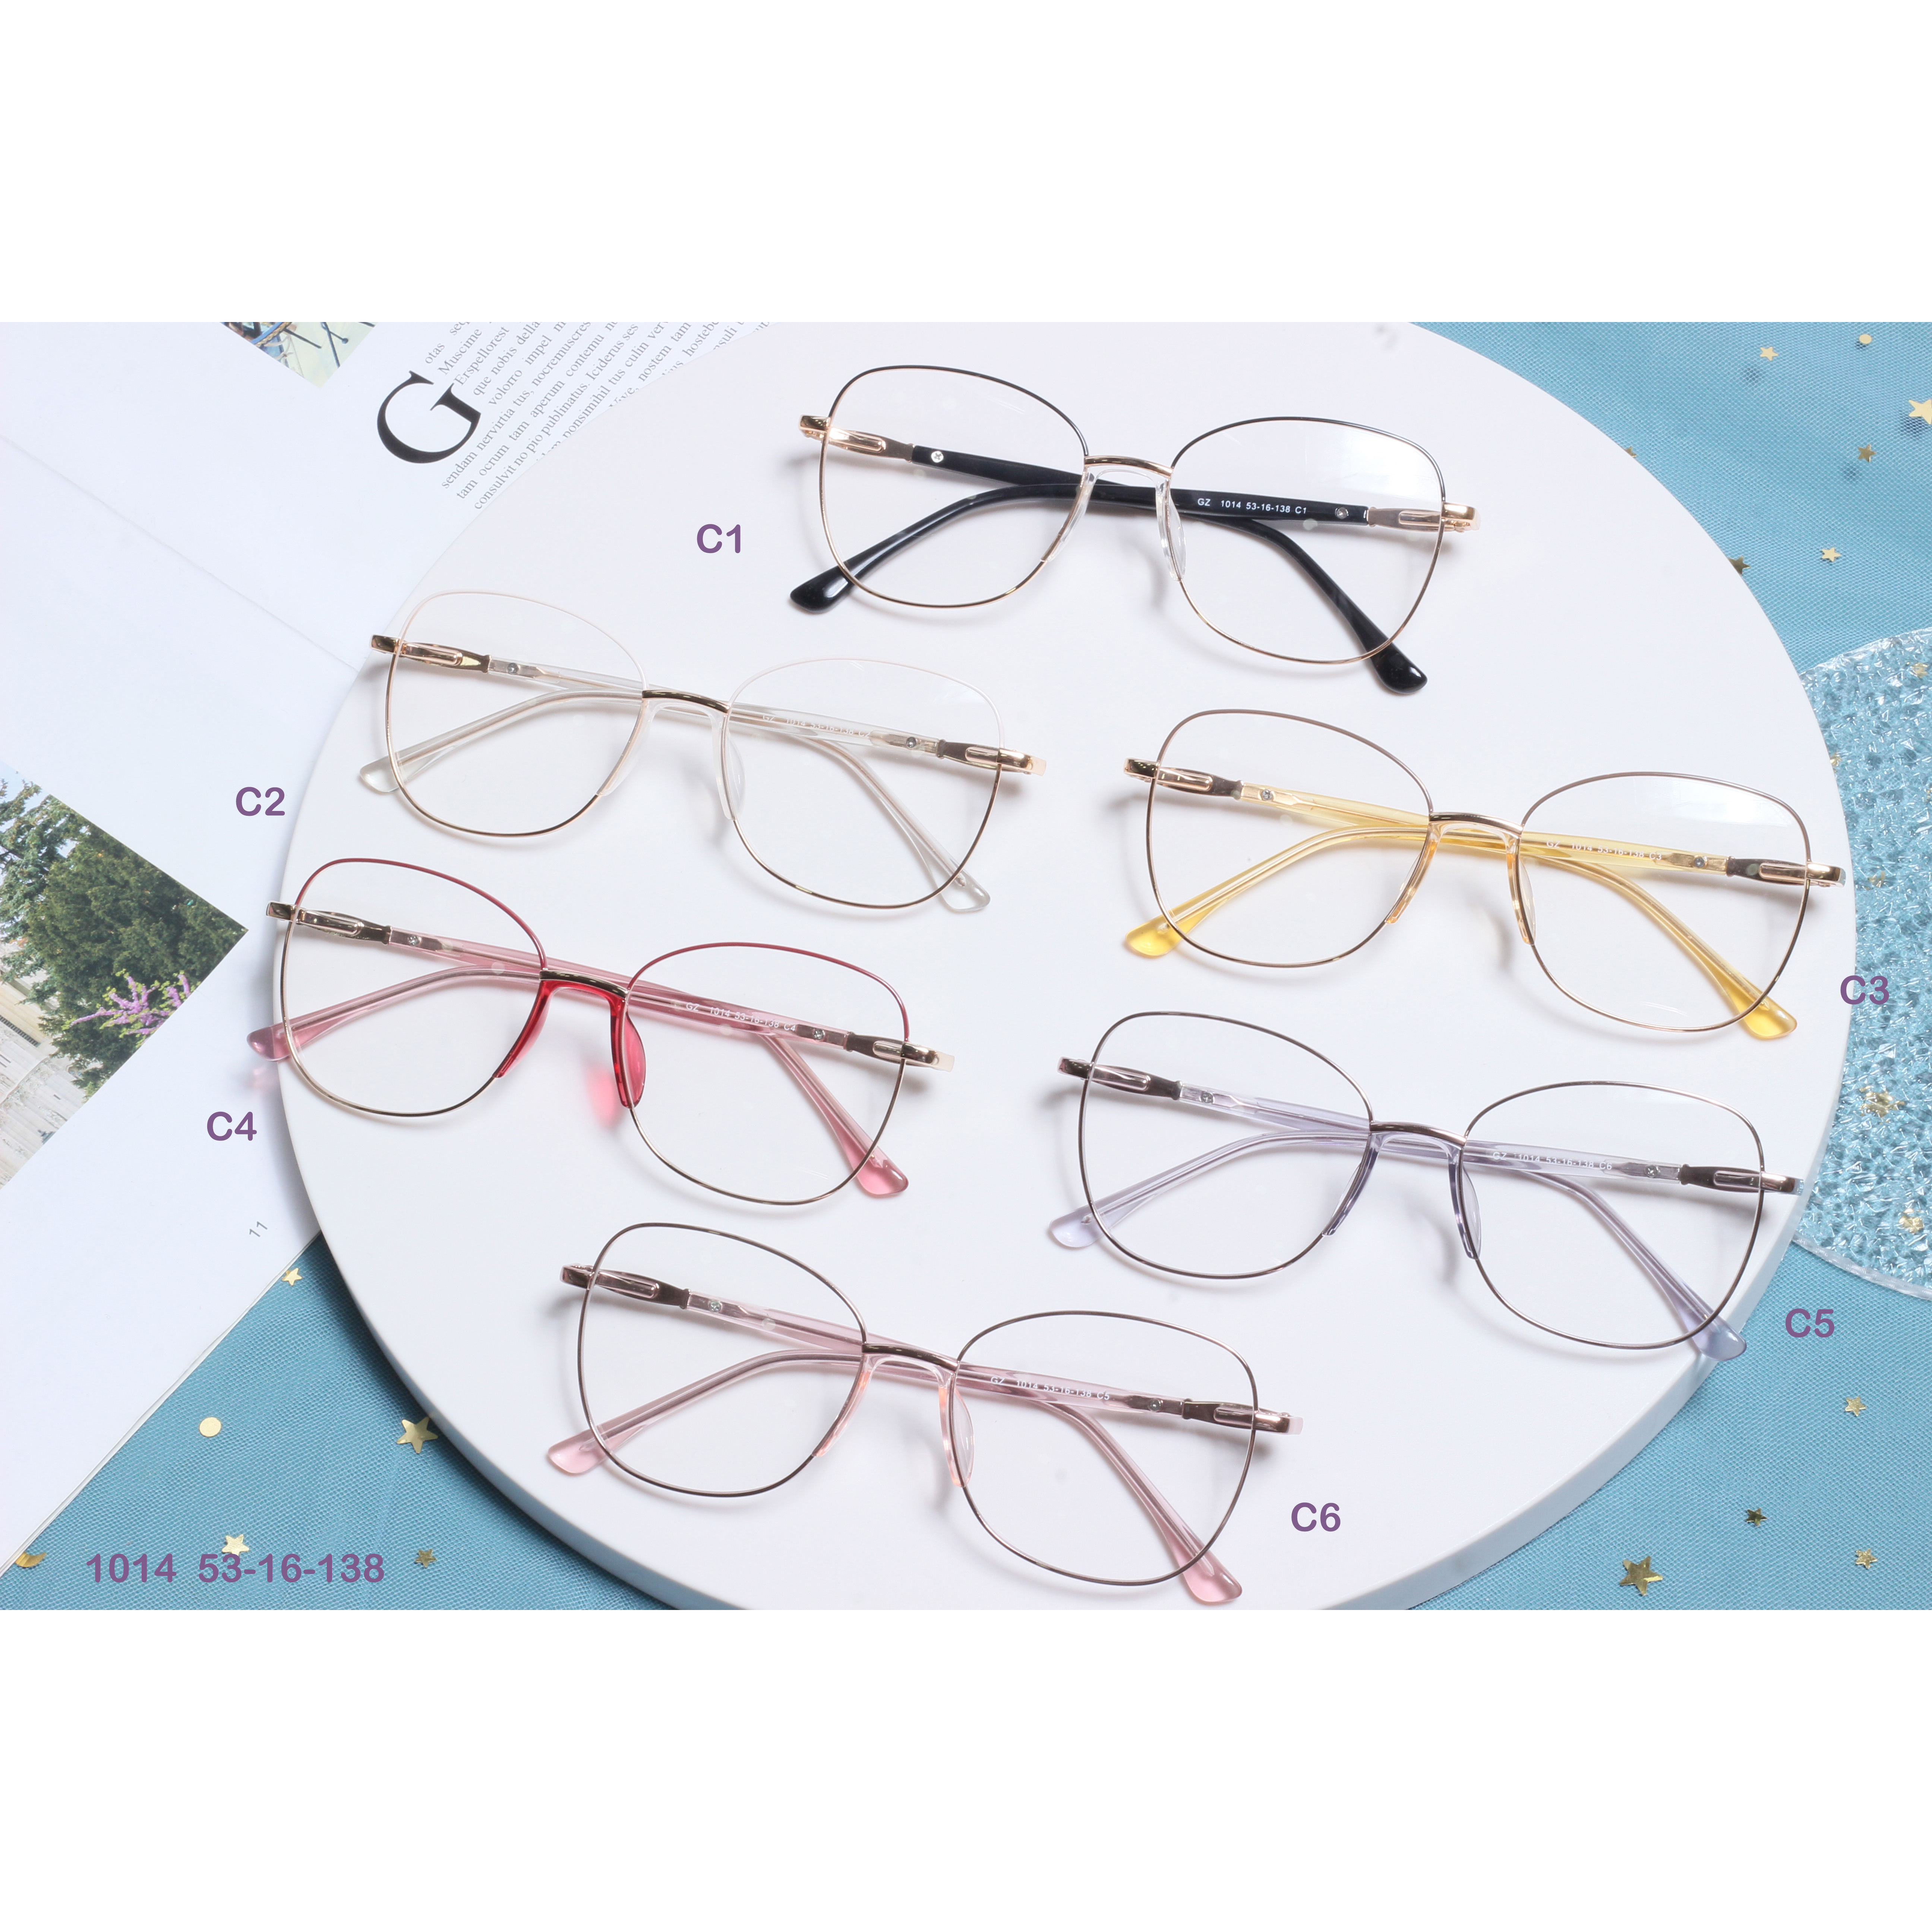 Designer Brand Metal Wholesale Eyeglasses River Optical Frame (2)